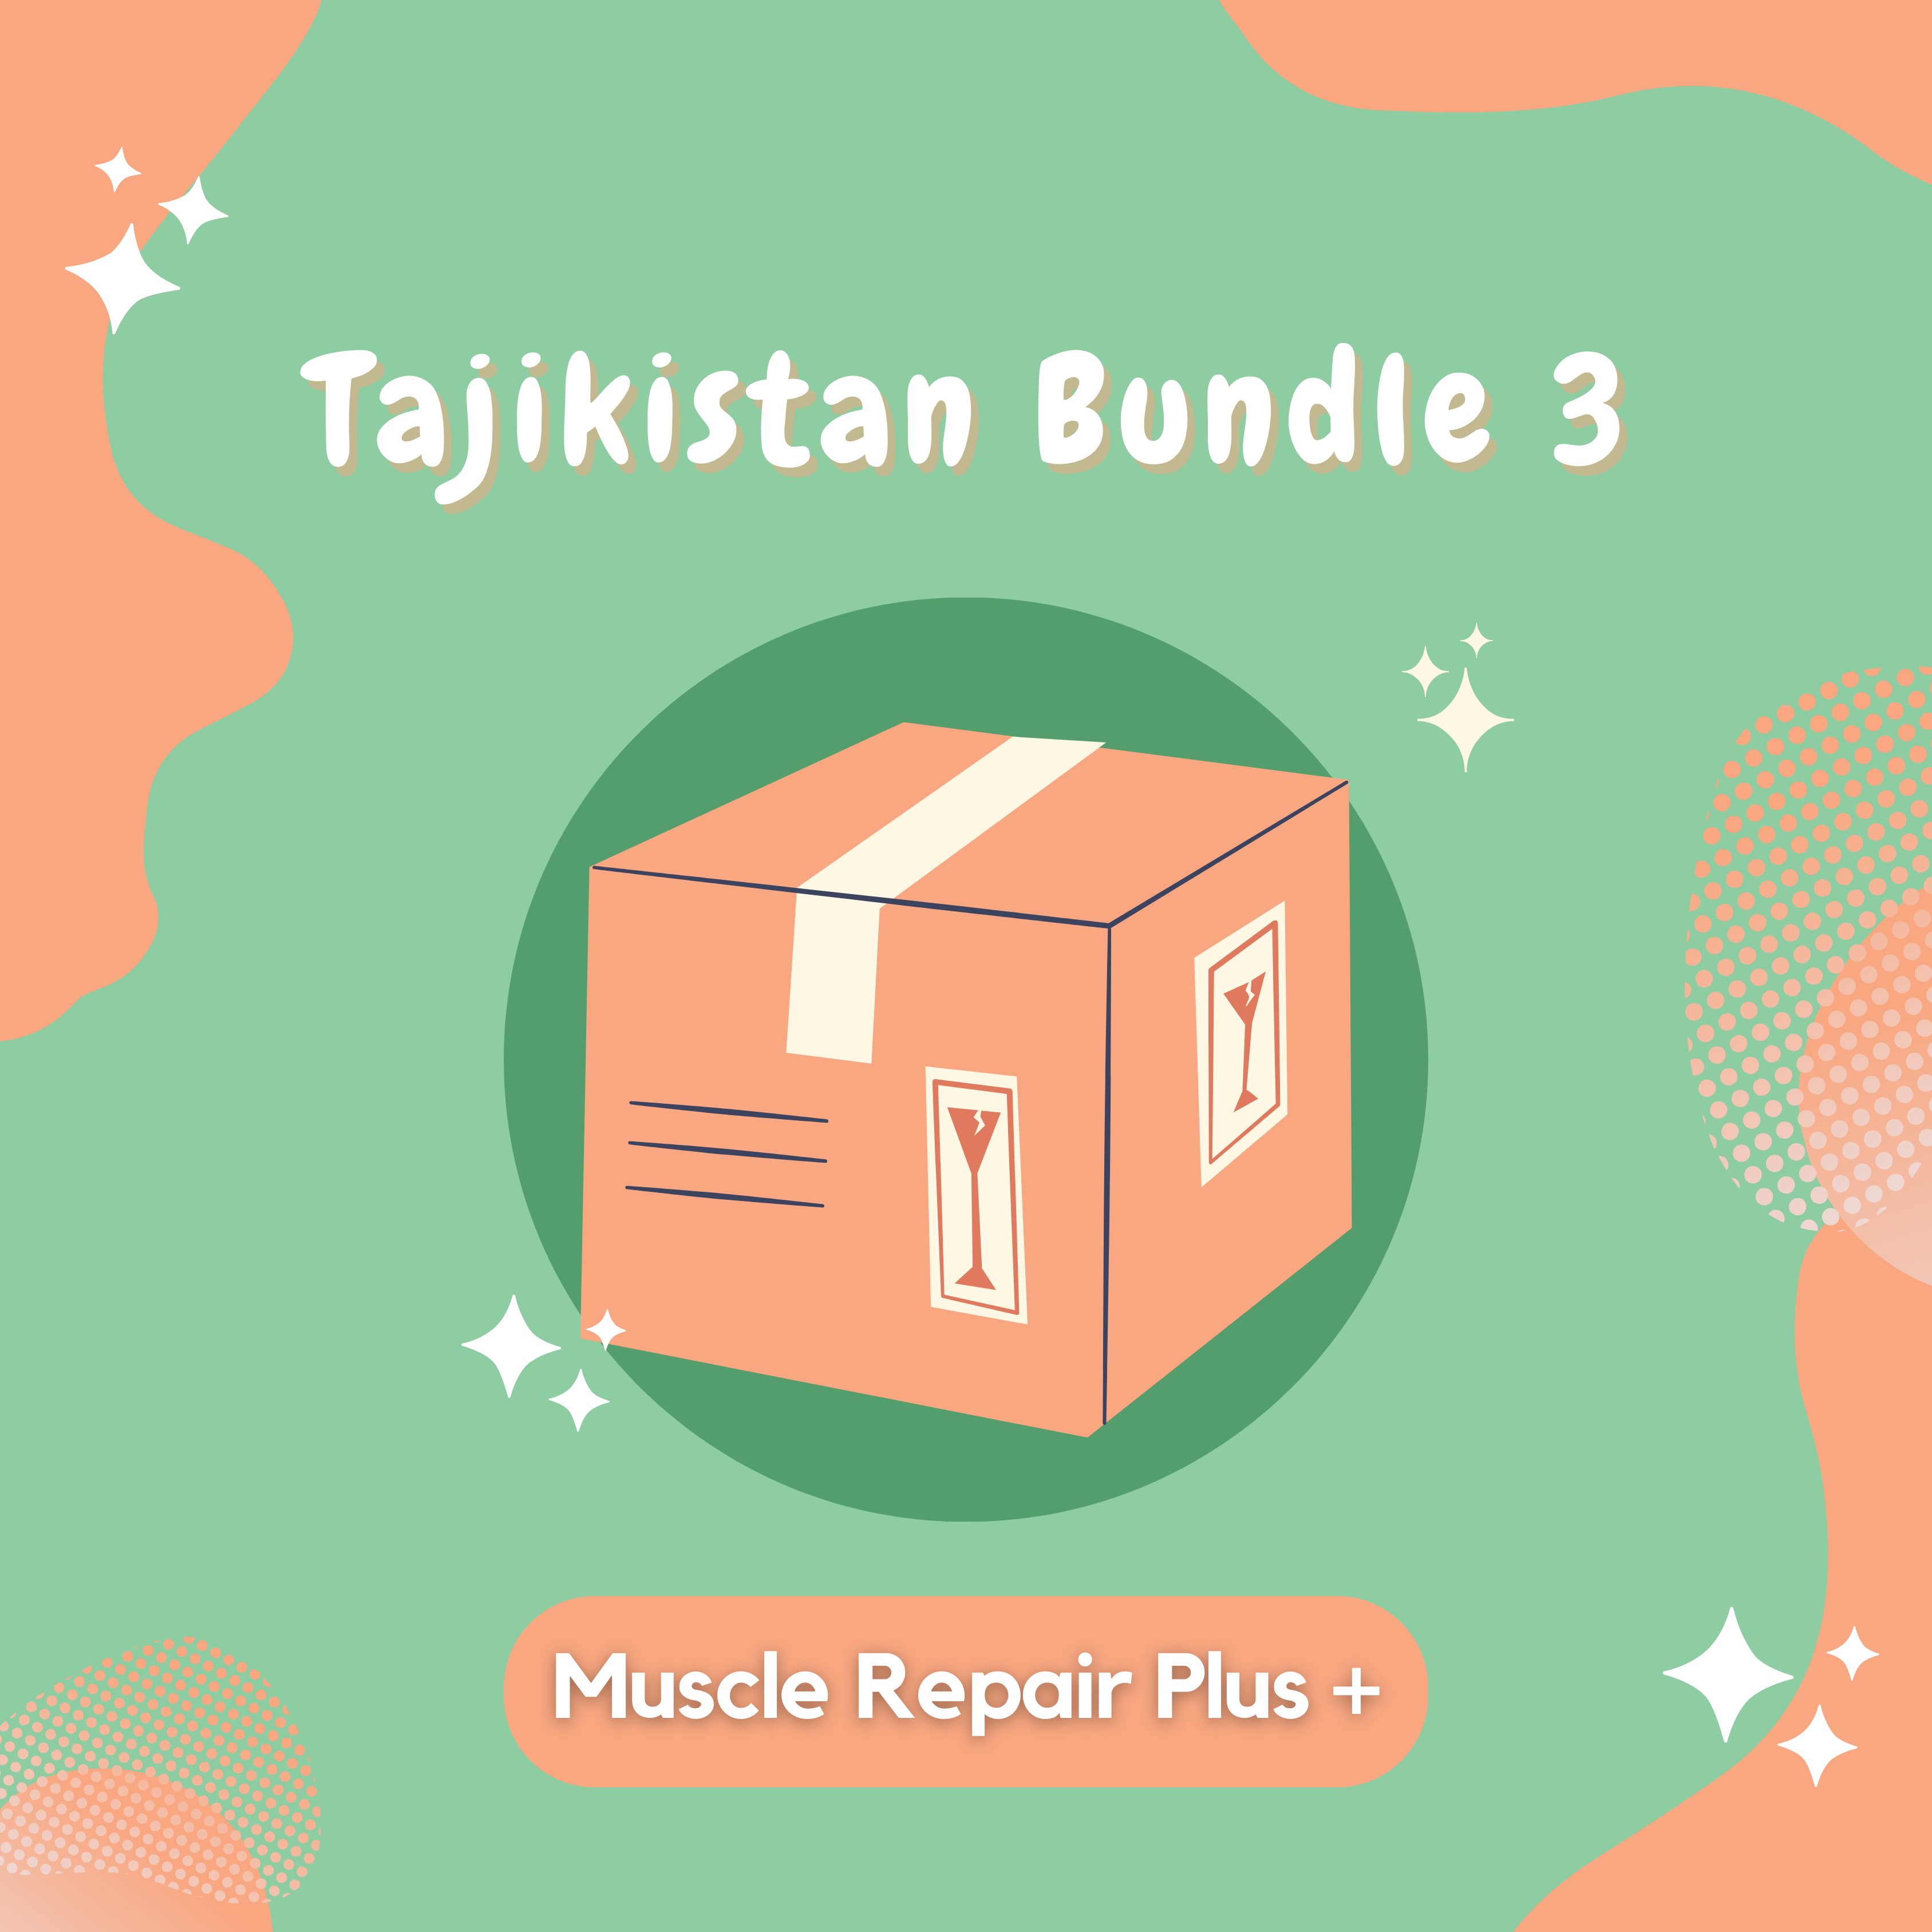 Tajikistan Bundle 3 - Muscle Repair Plus